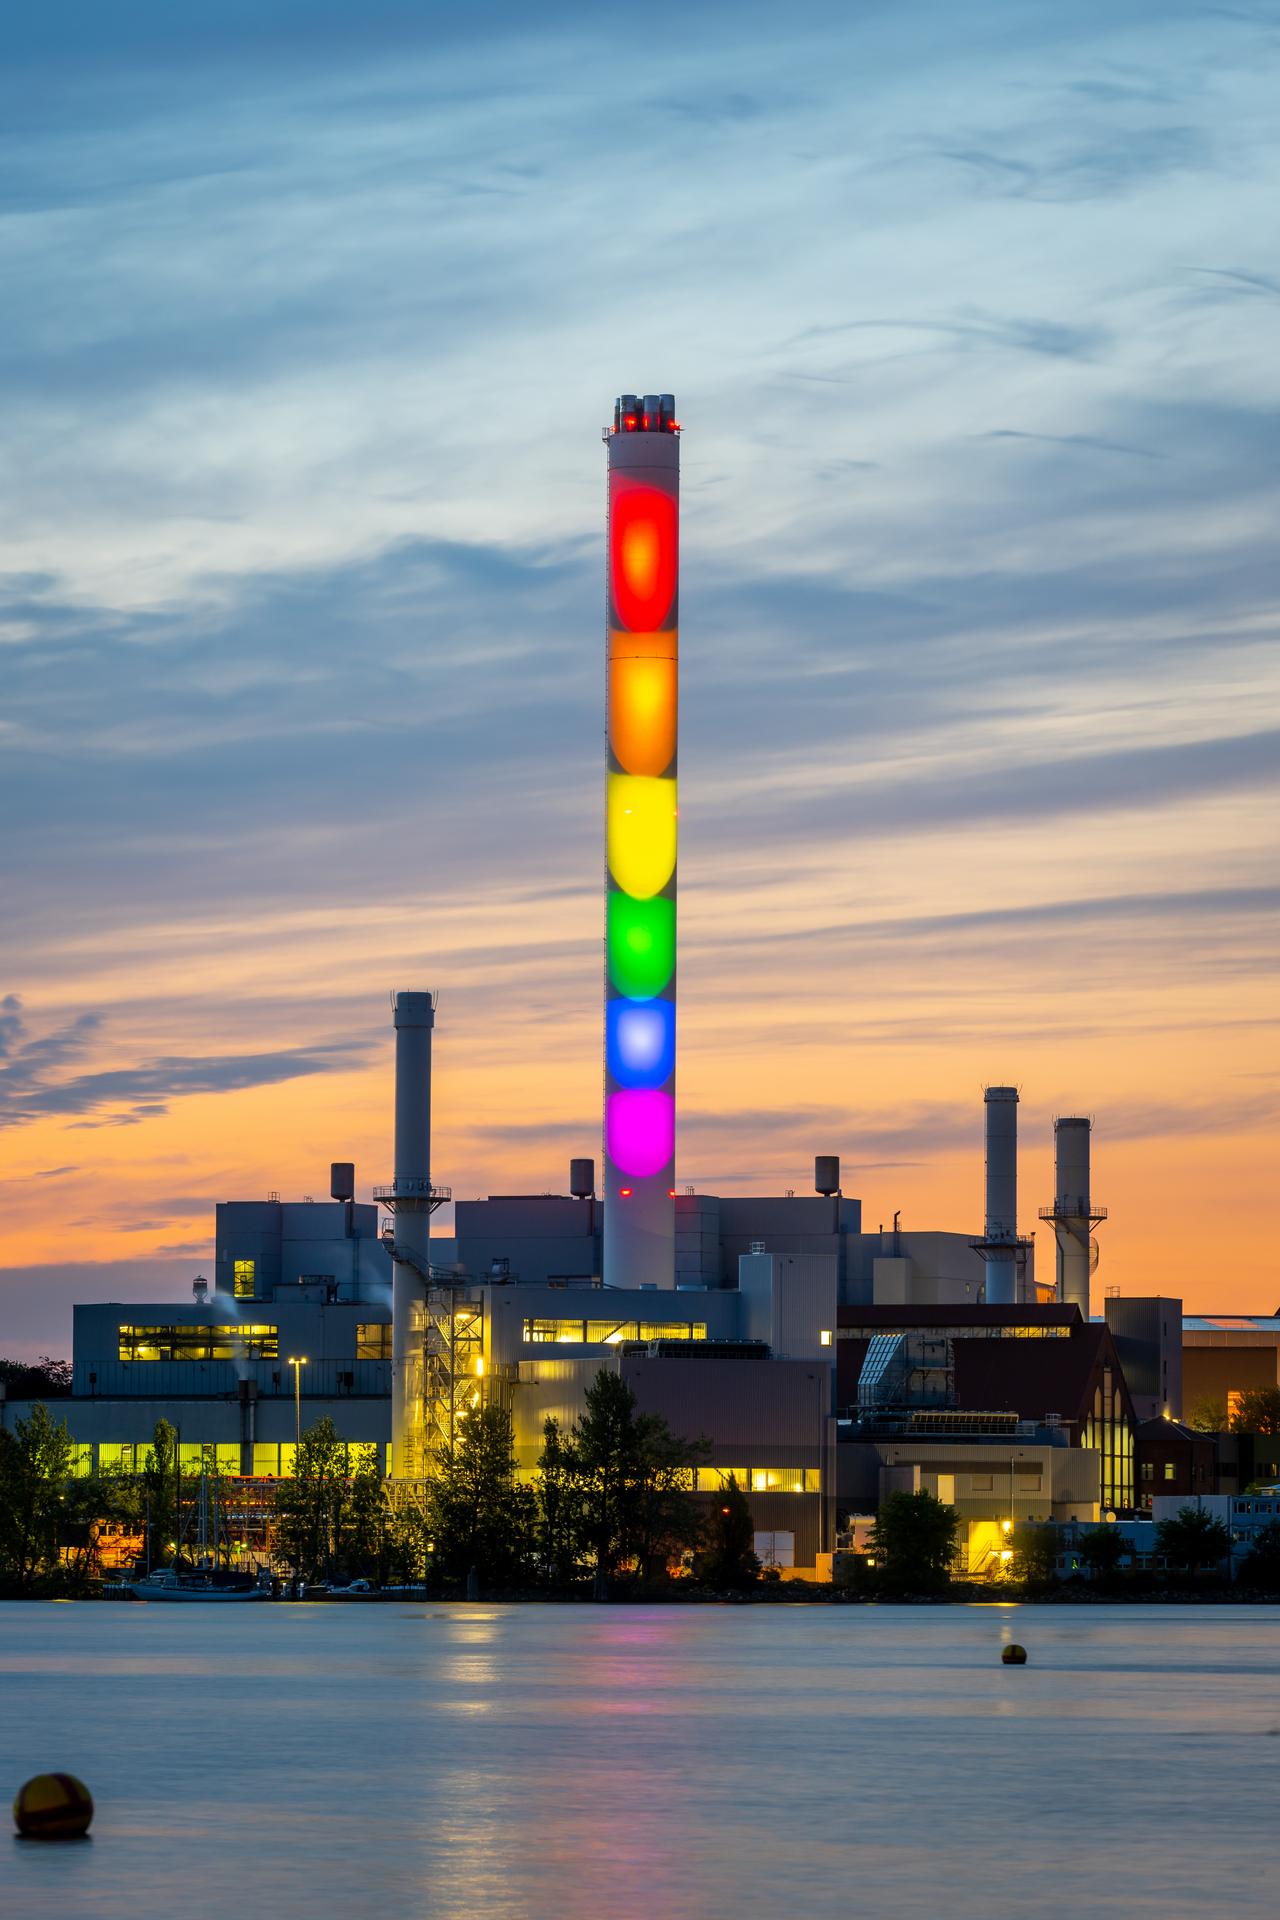 Stadtwerke Flensburg Schornstein im Hochformat in Regenbogenfarben beleuchtet bei Dämmerung, Diversity.